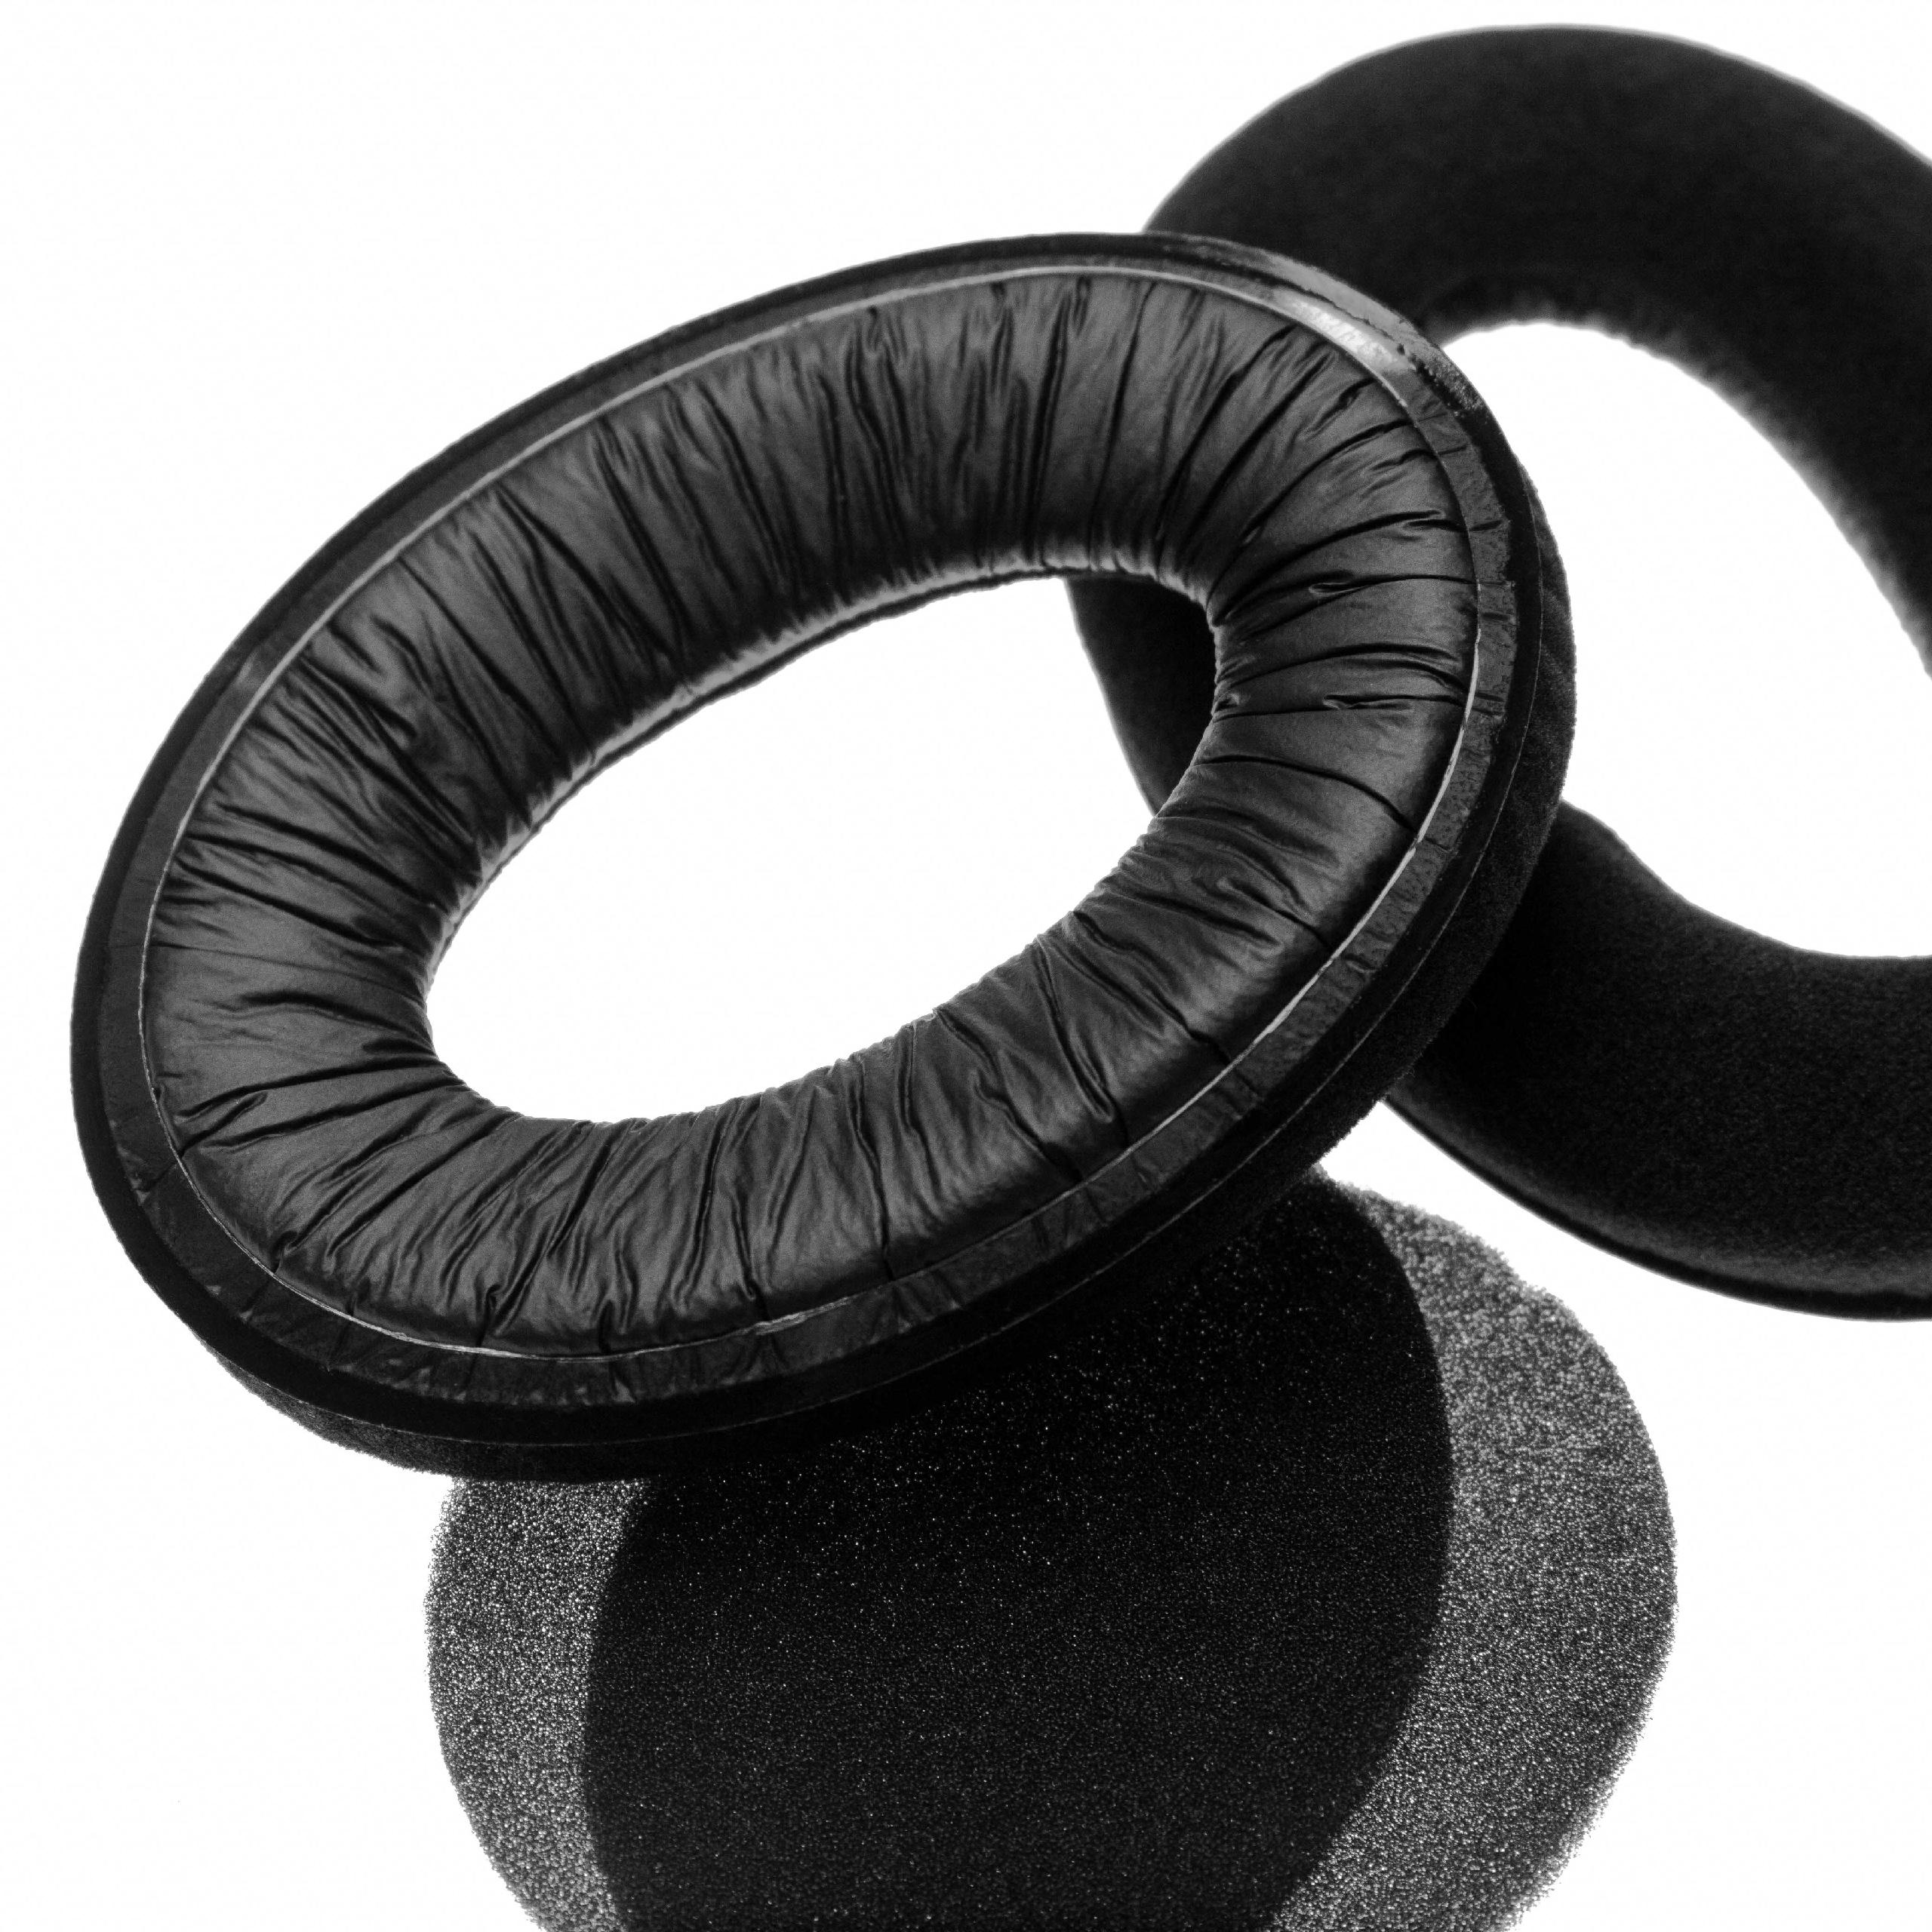 Ohrenpolster passend für Sennheiser HD515 Kopfhörer u.a. - Schaumstoff, 11 x 8 cm, 20 mm stark, Schwarz